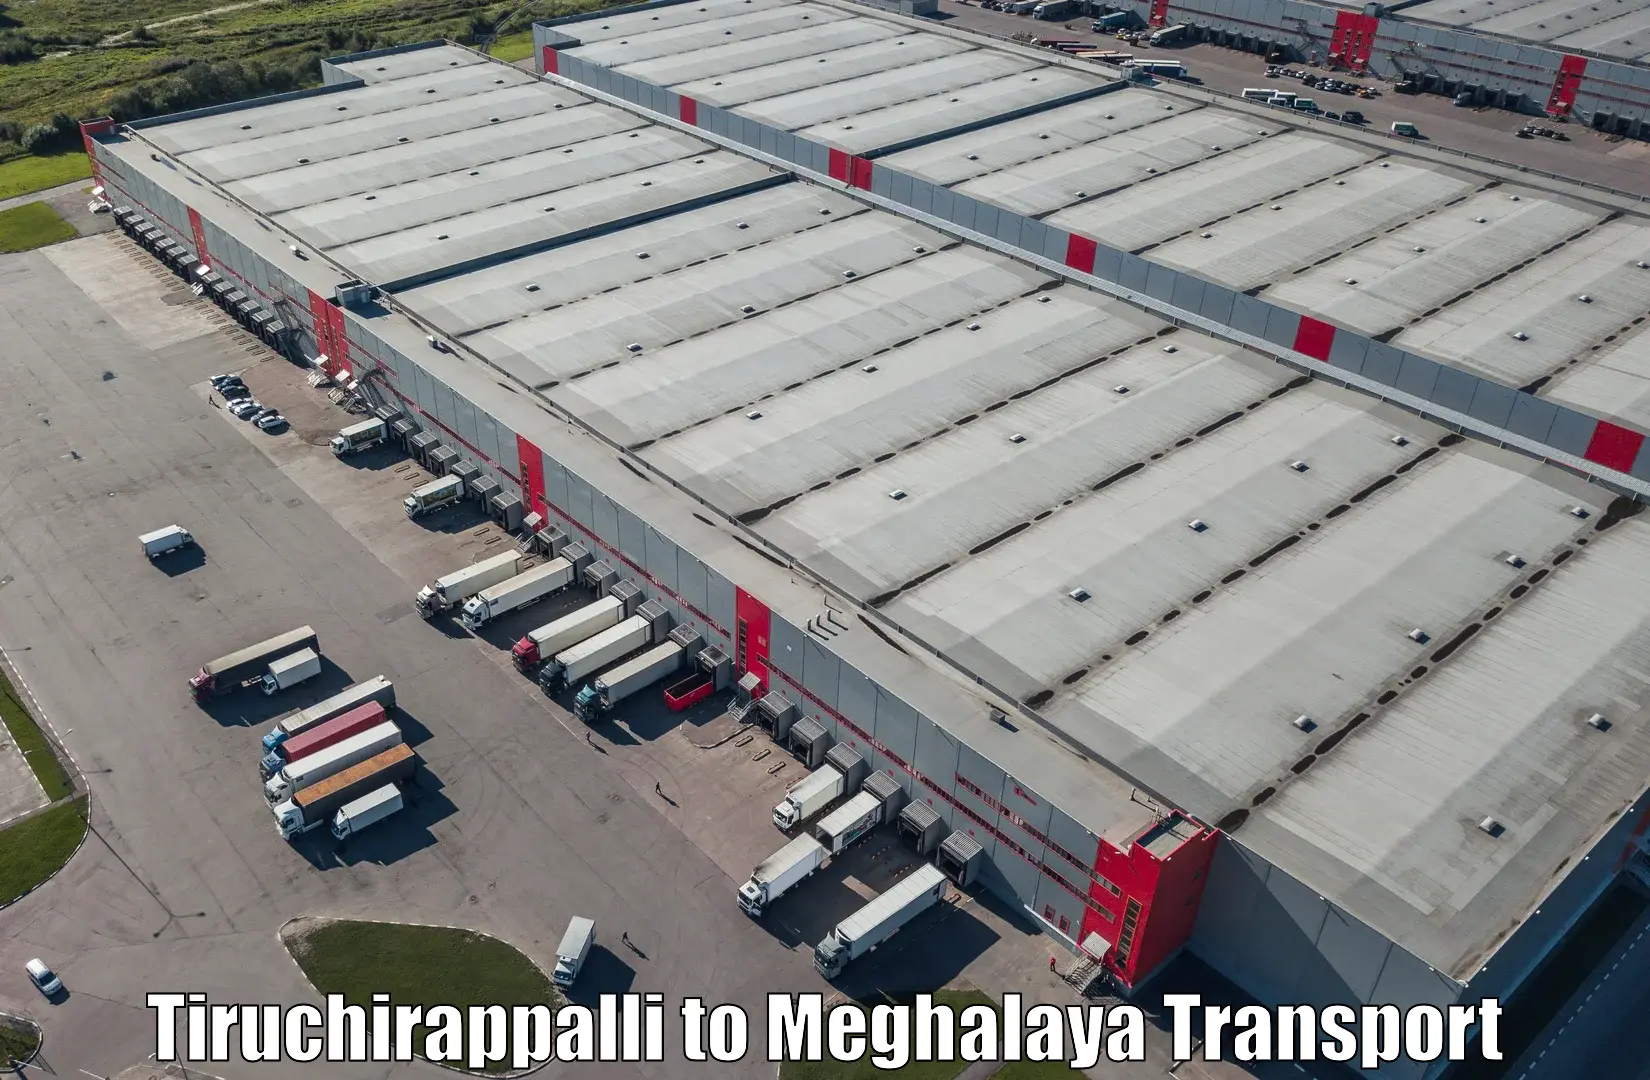 Truck transport companies in India Tiruchirappalli to Mairang